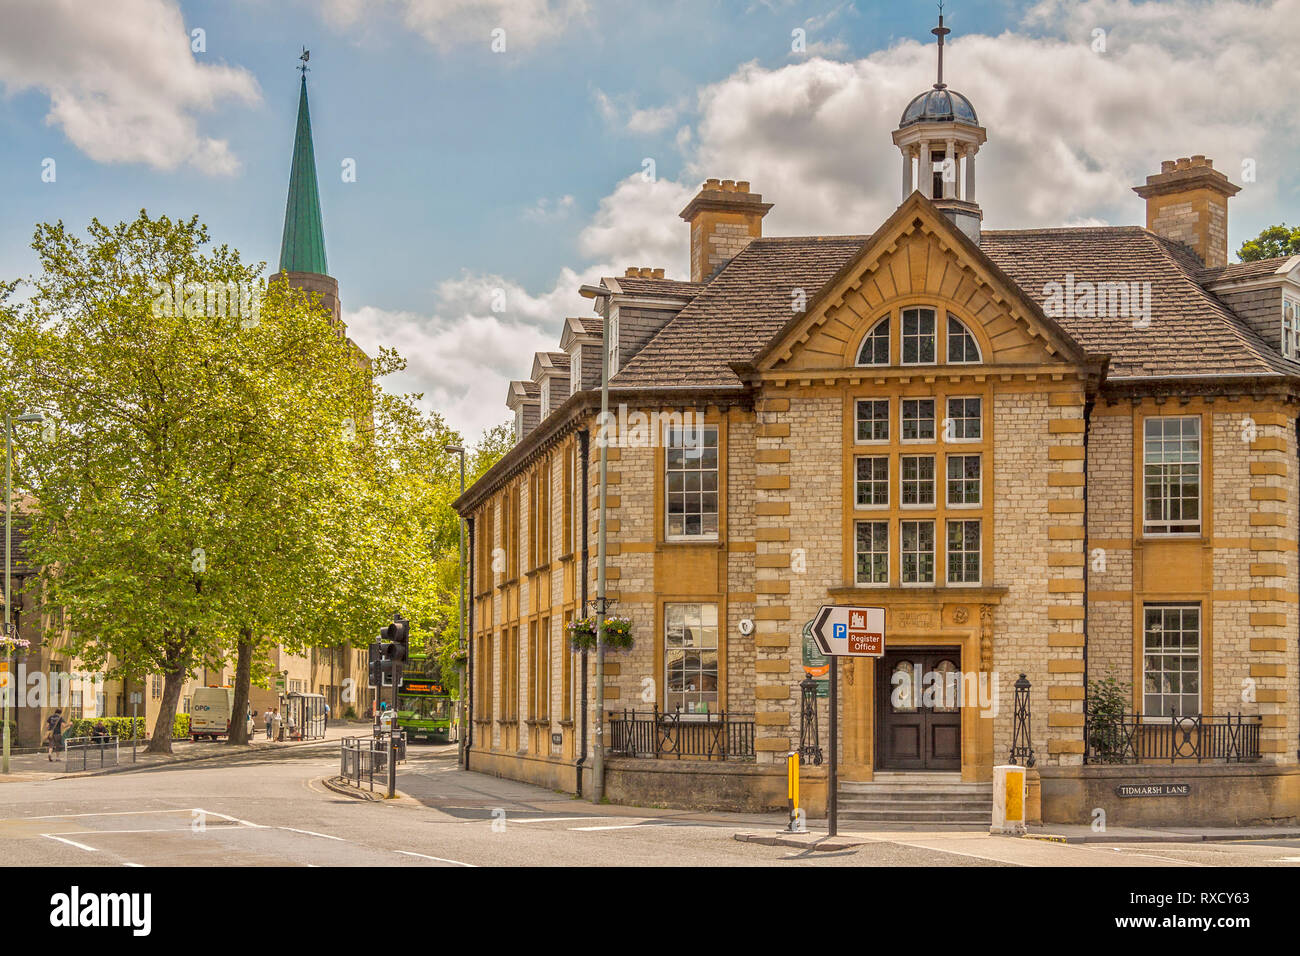 The Registry Office, Tidmarsh Lane, Oxford, UK Stock Photo